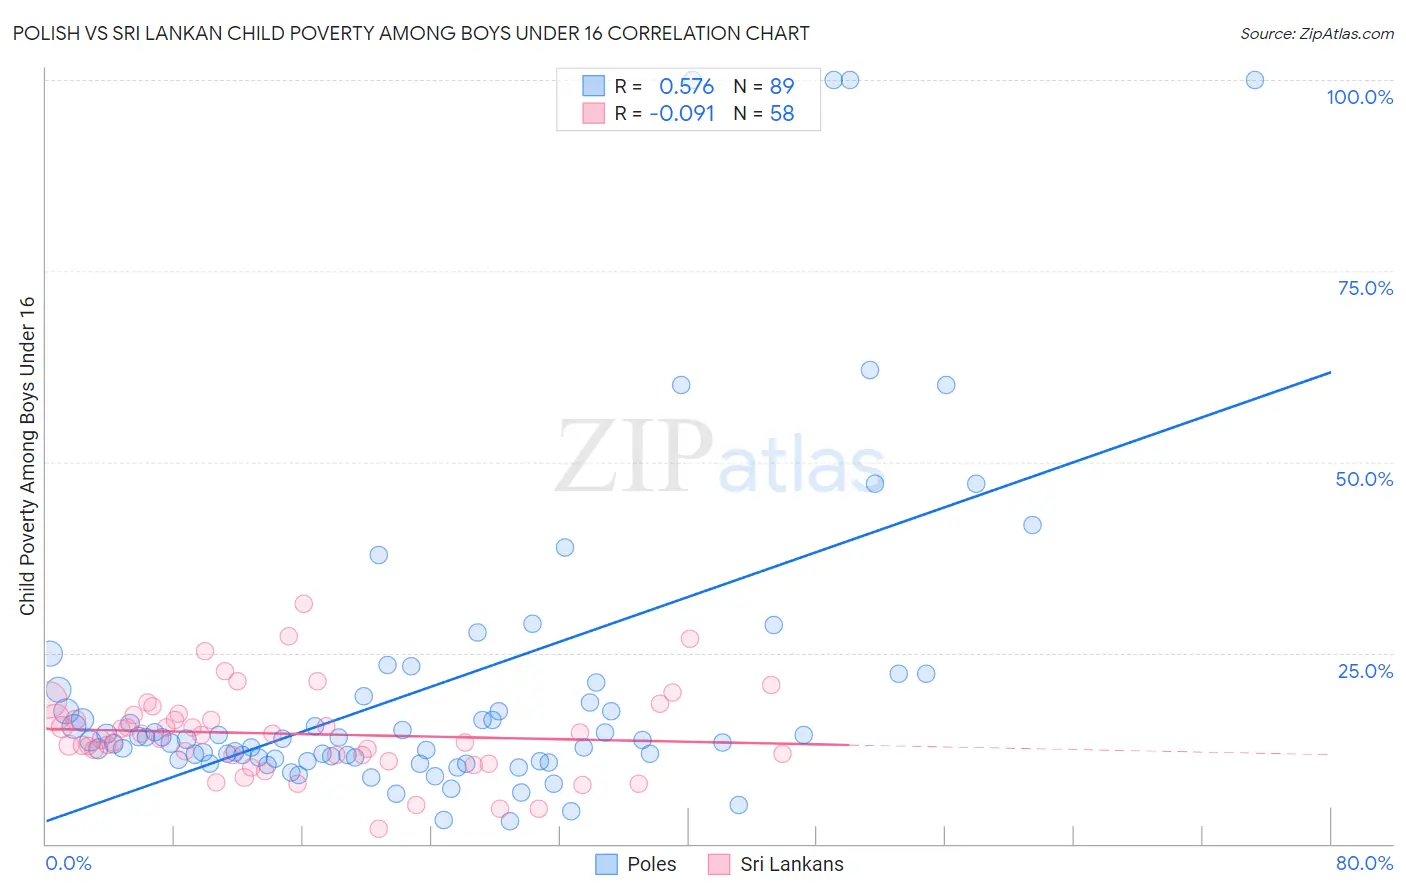 Polish vs Sri Lankan Child Poverty Among Boys Under 16